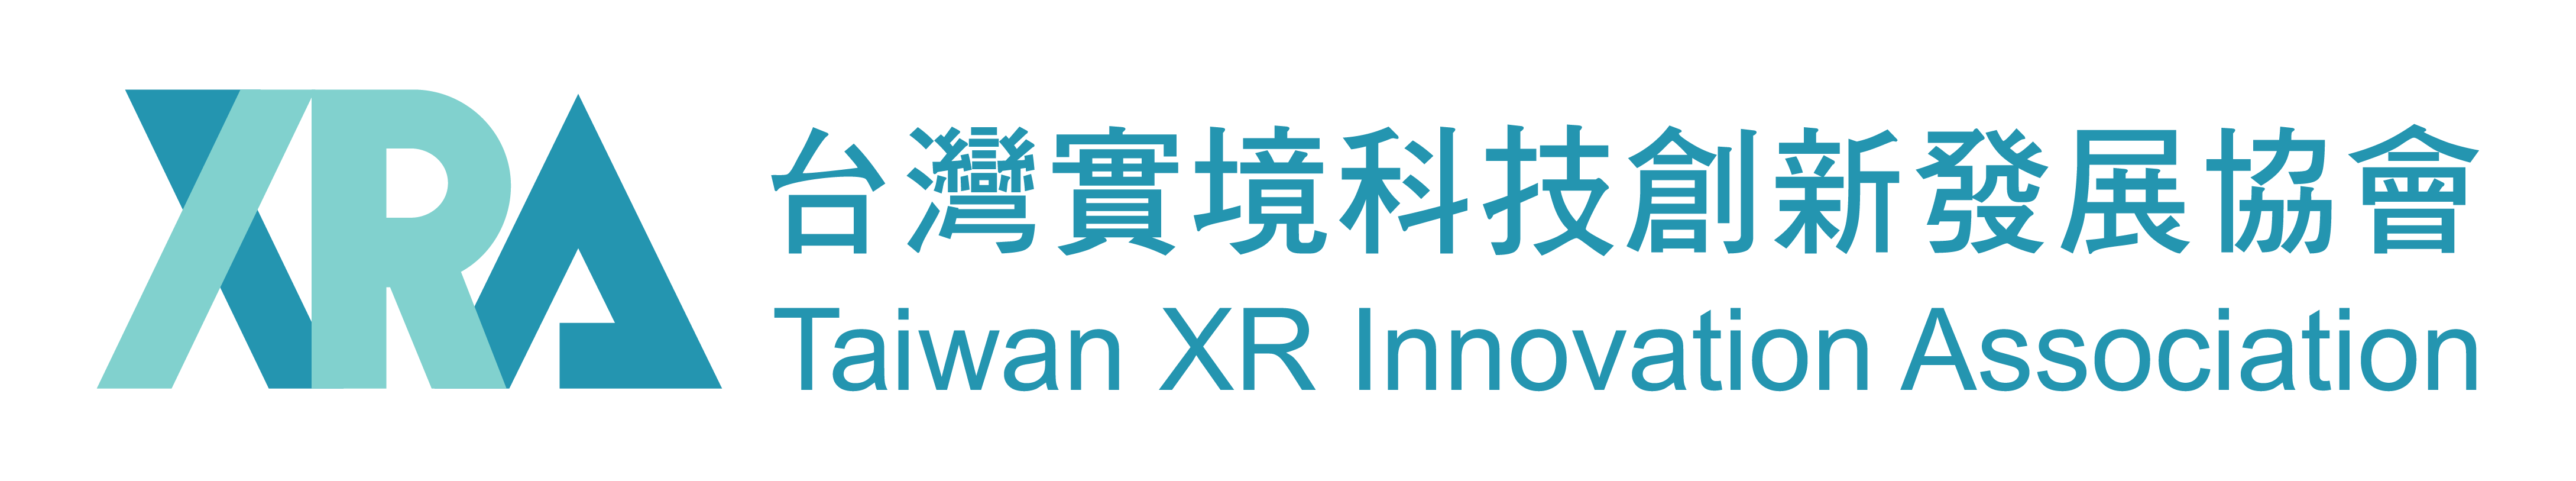 台灣實境科技創新發展協會Taiwan XR innovation Association